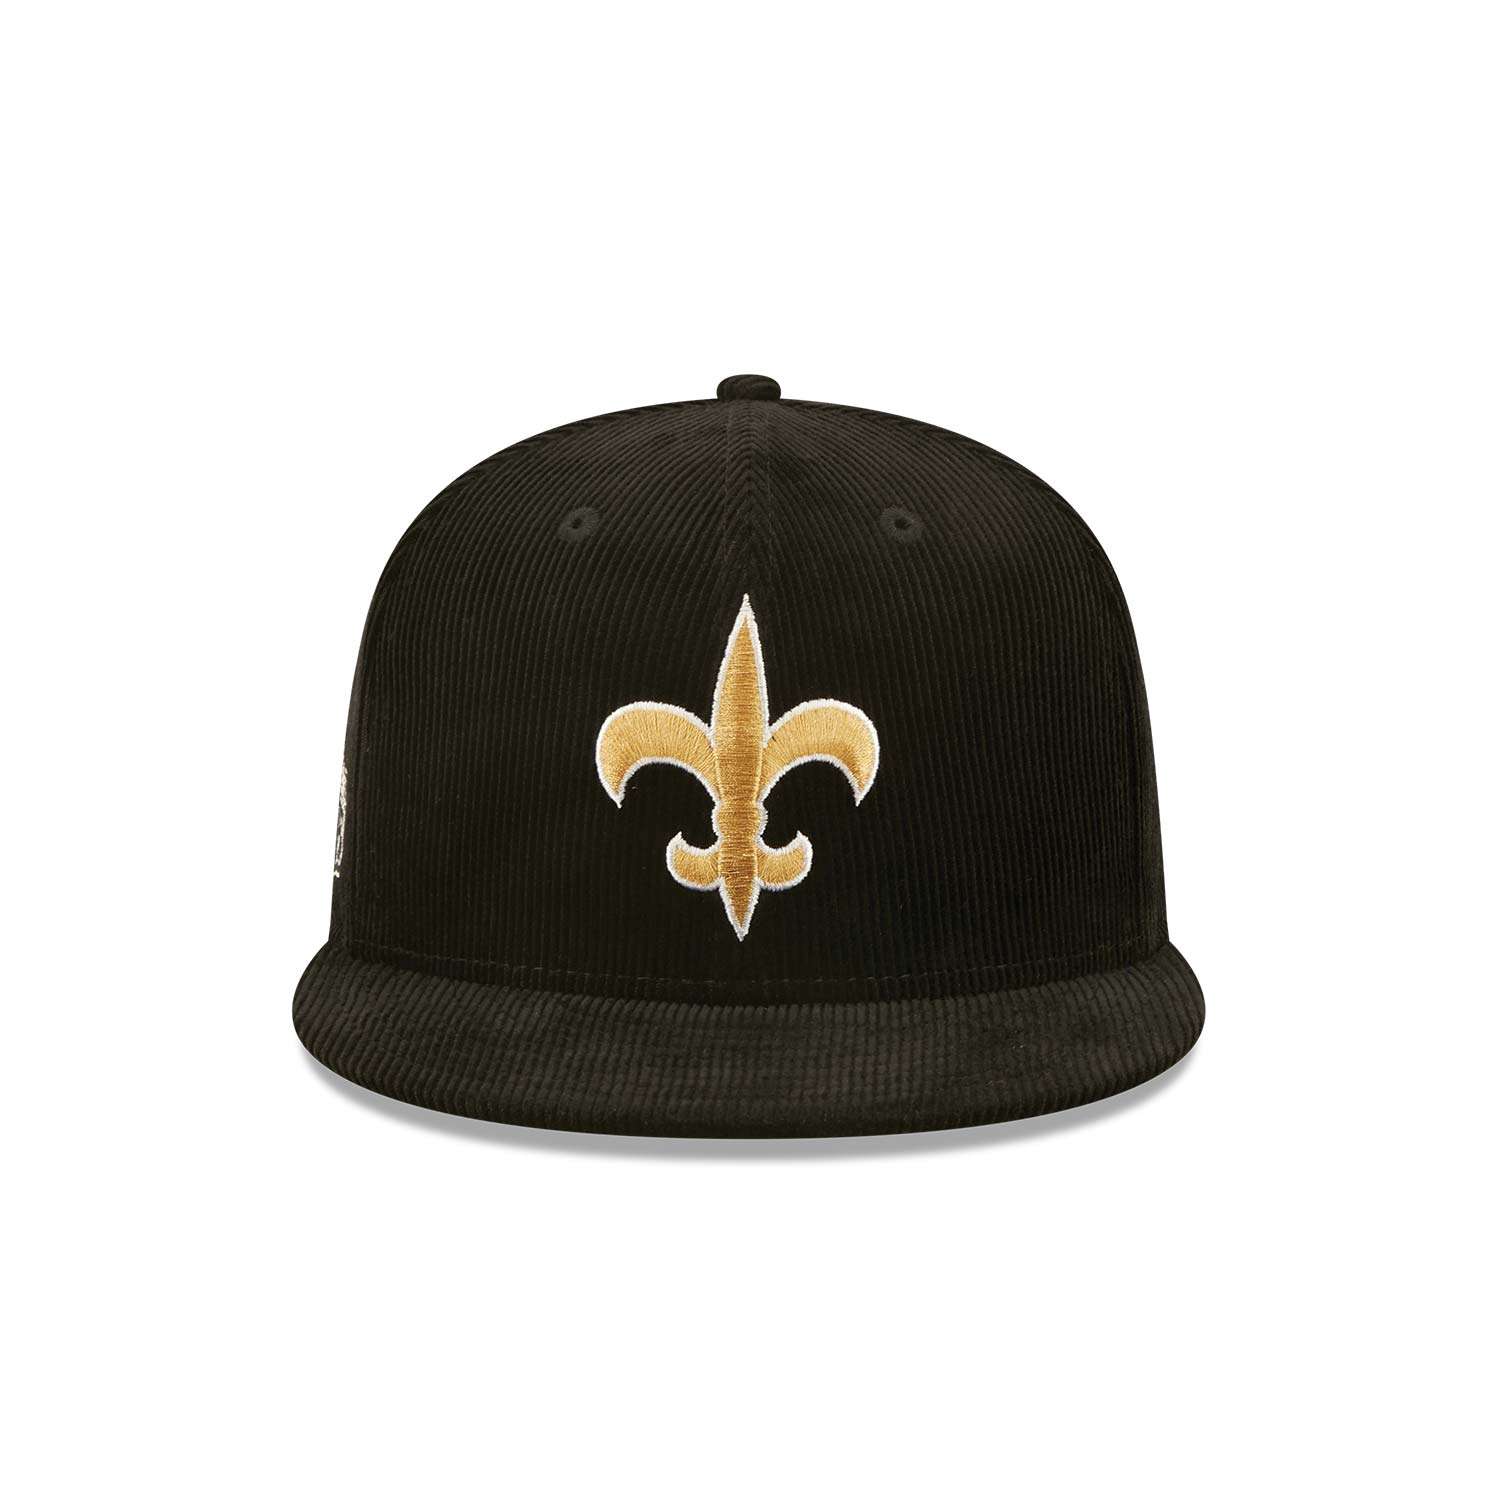 Casquette 9FIFTY Snapback New Orleans Saints NFL Retro Cord Noir